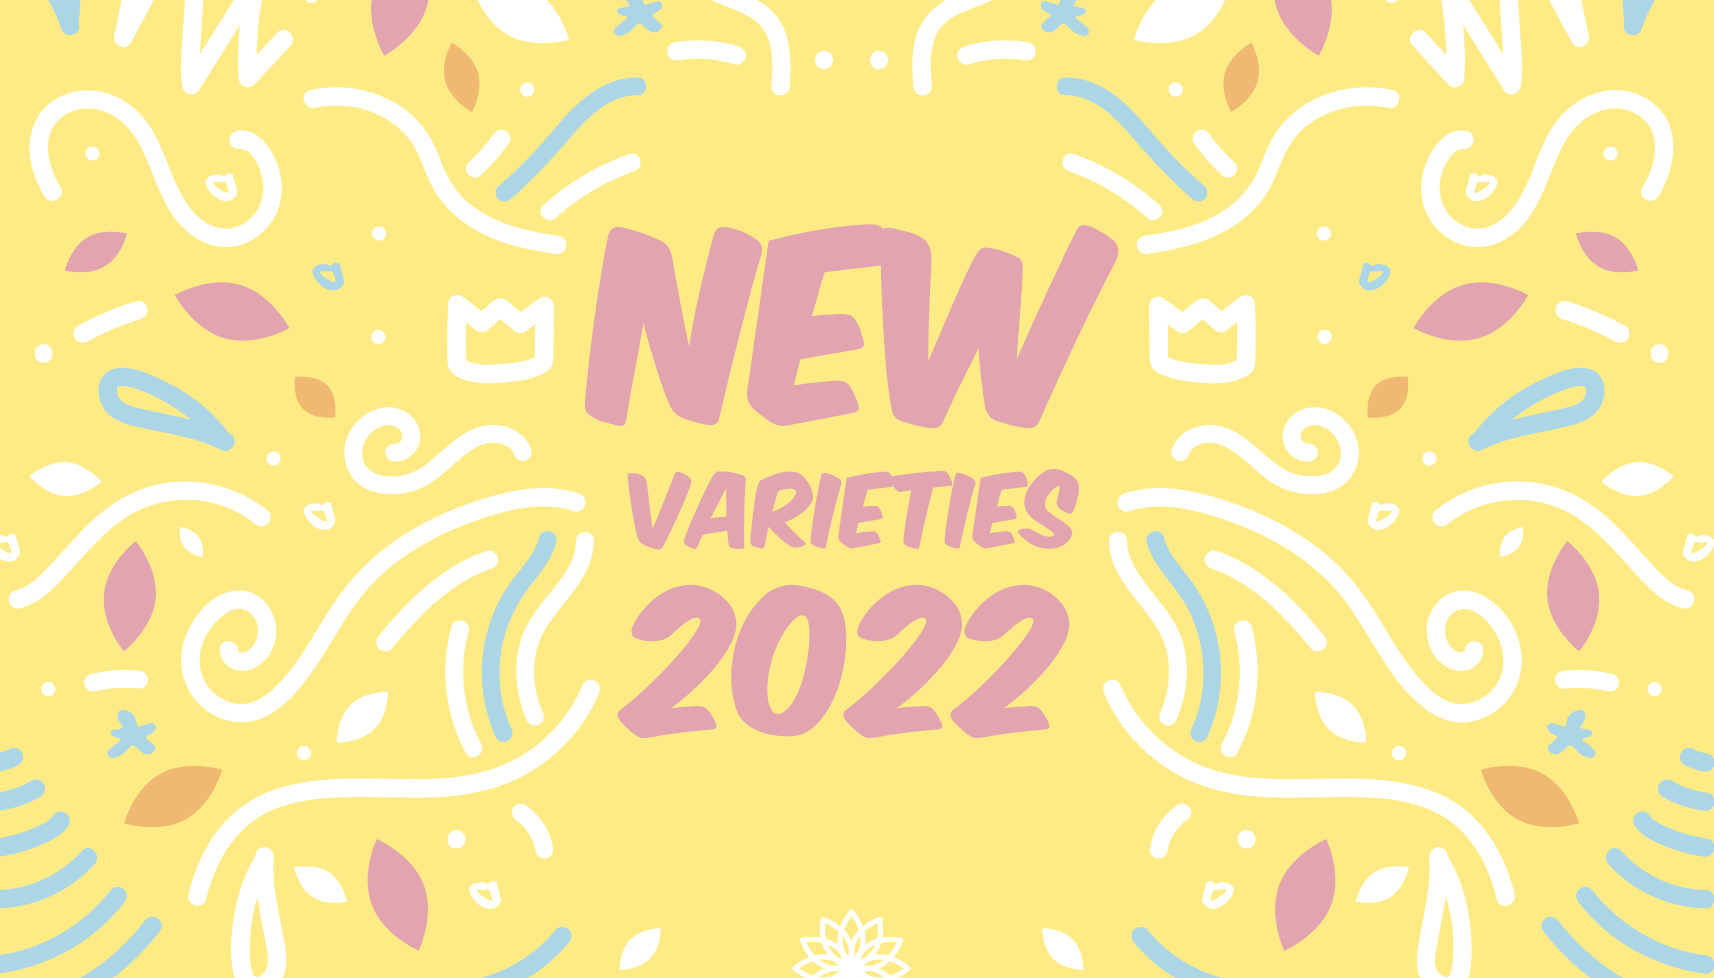 New varieties 2022